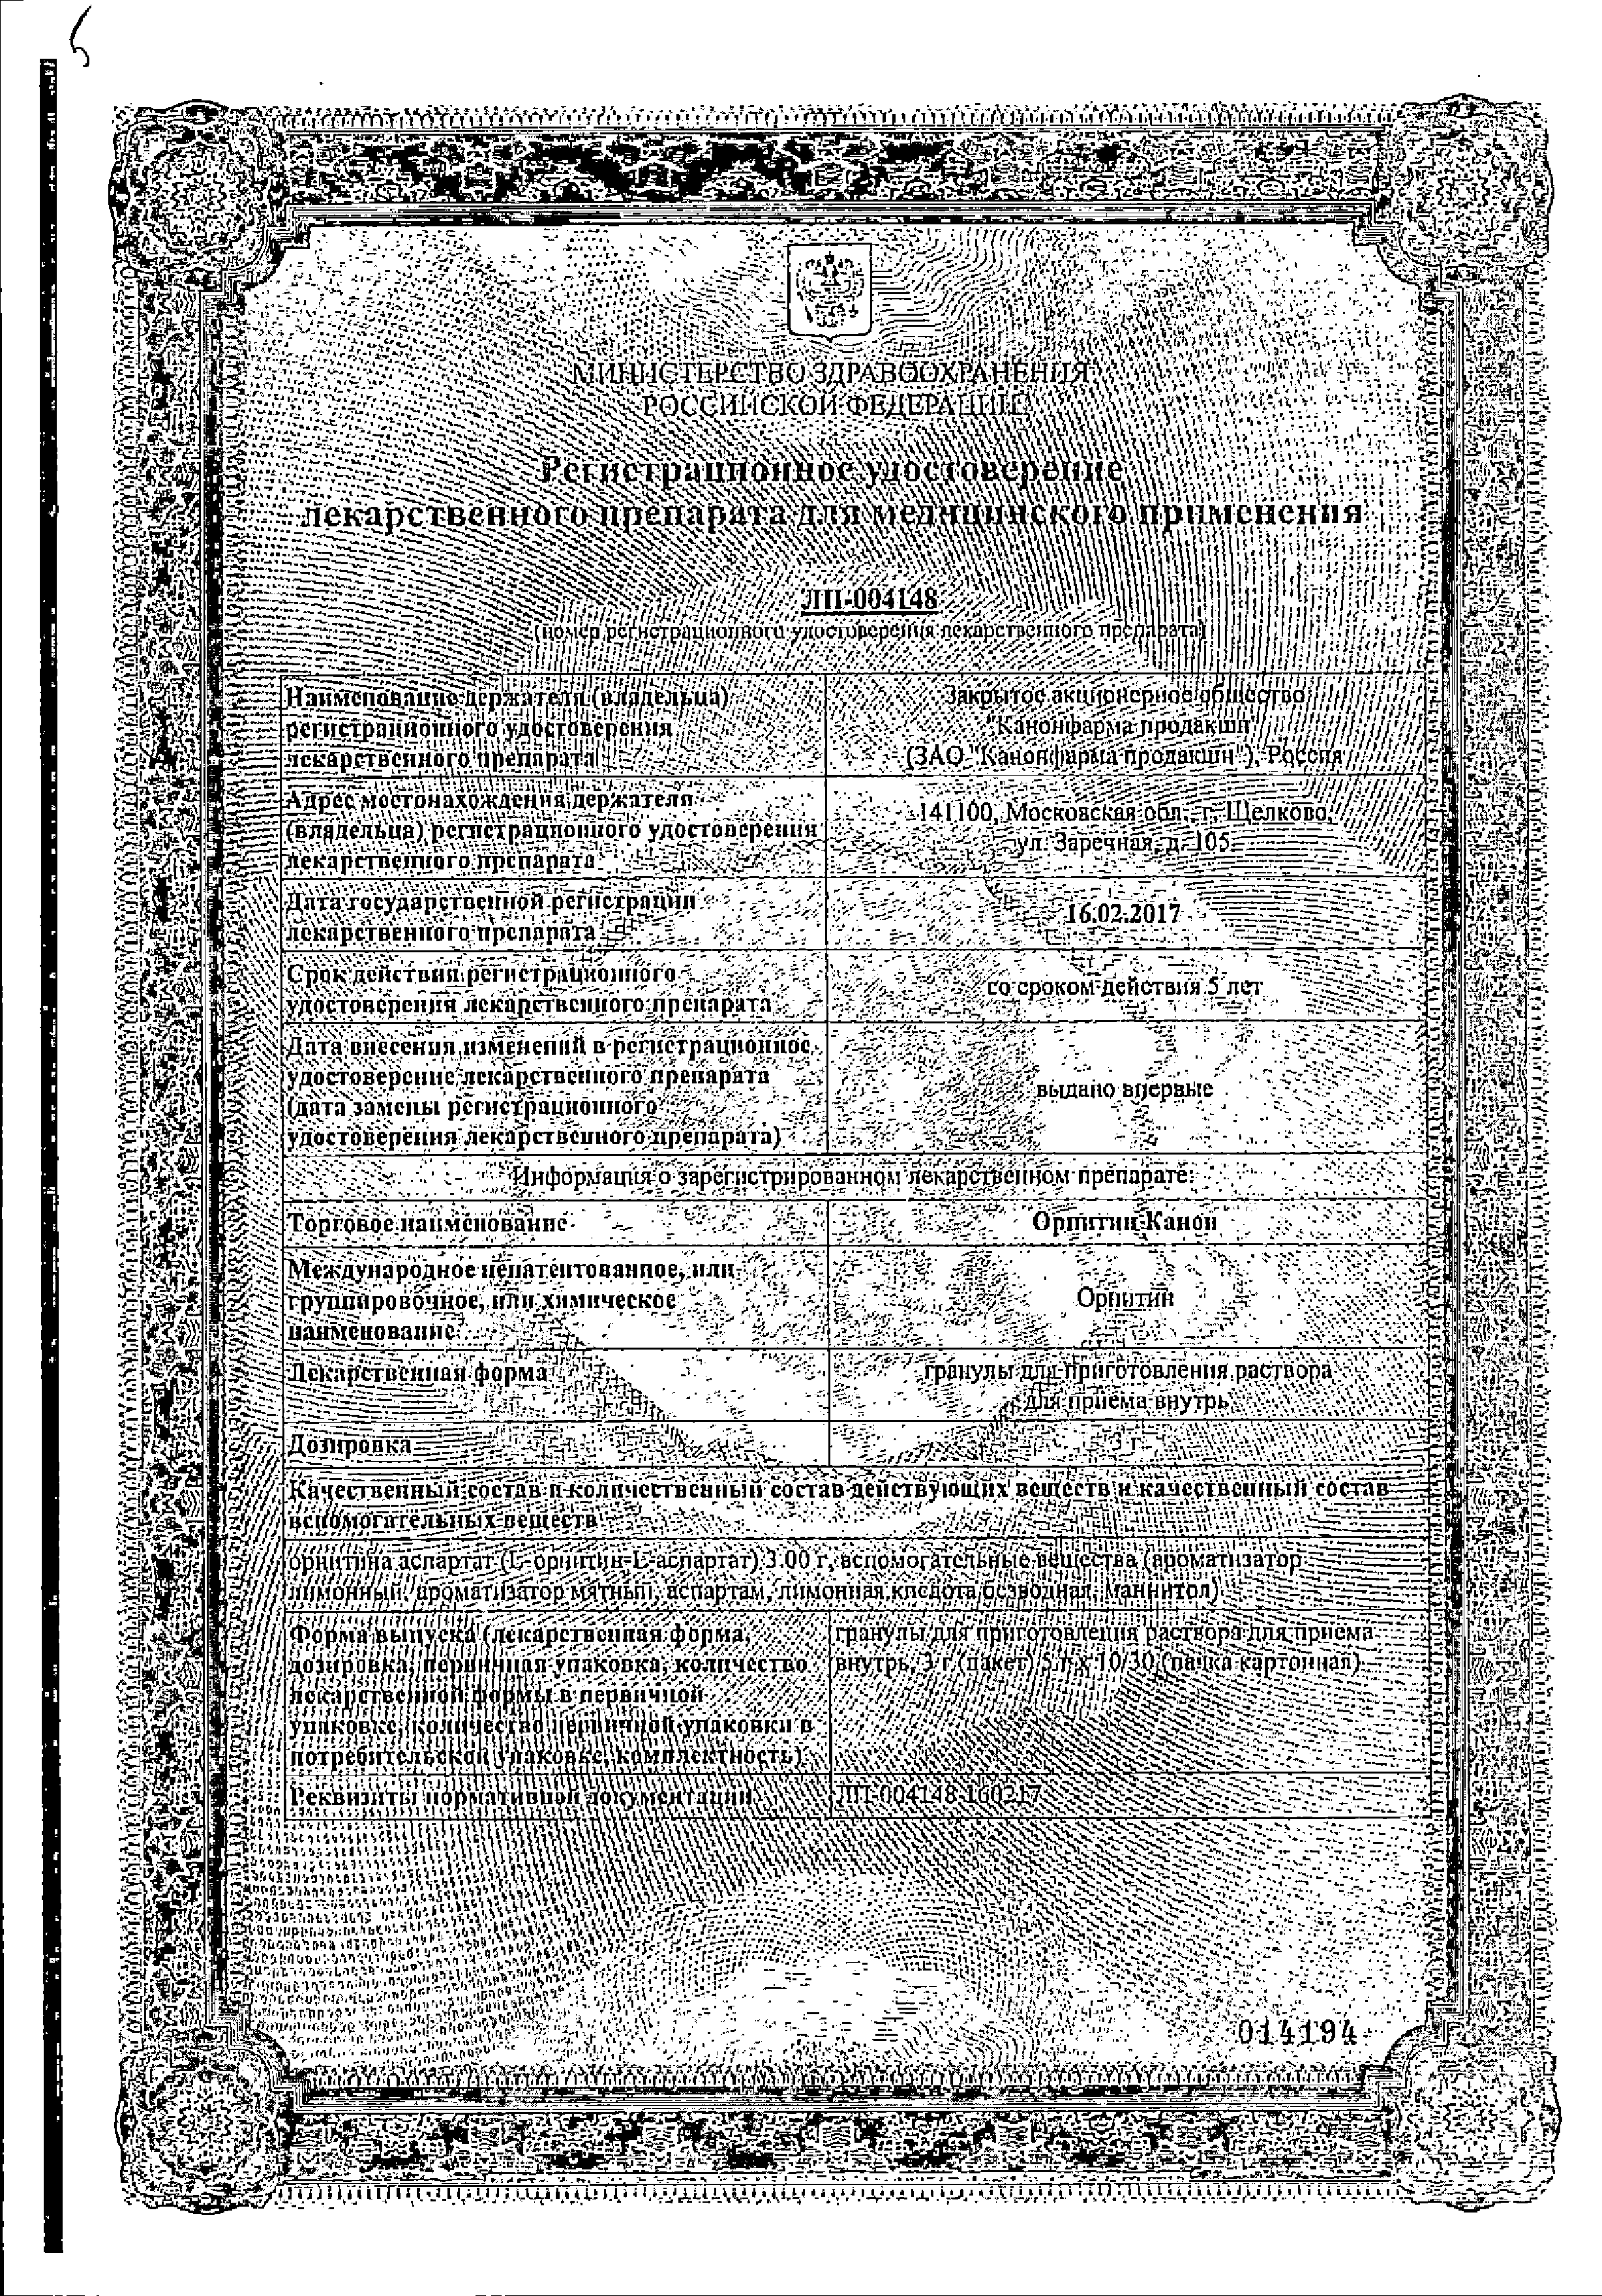 Орнитин Канон сертификат